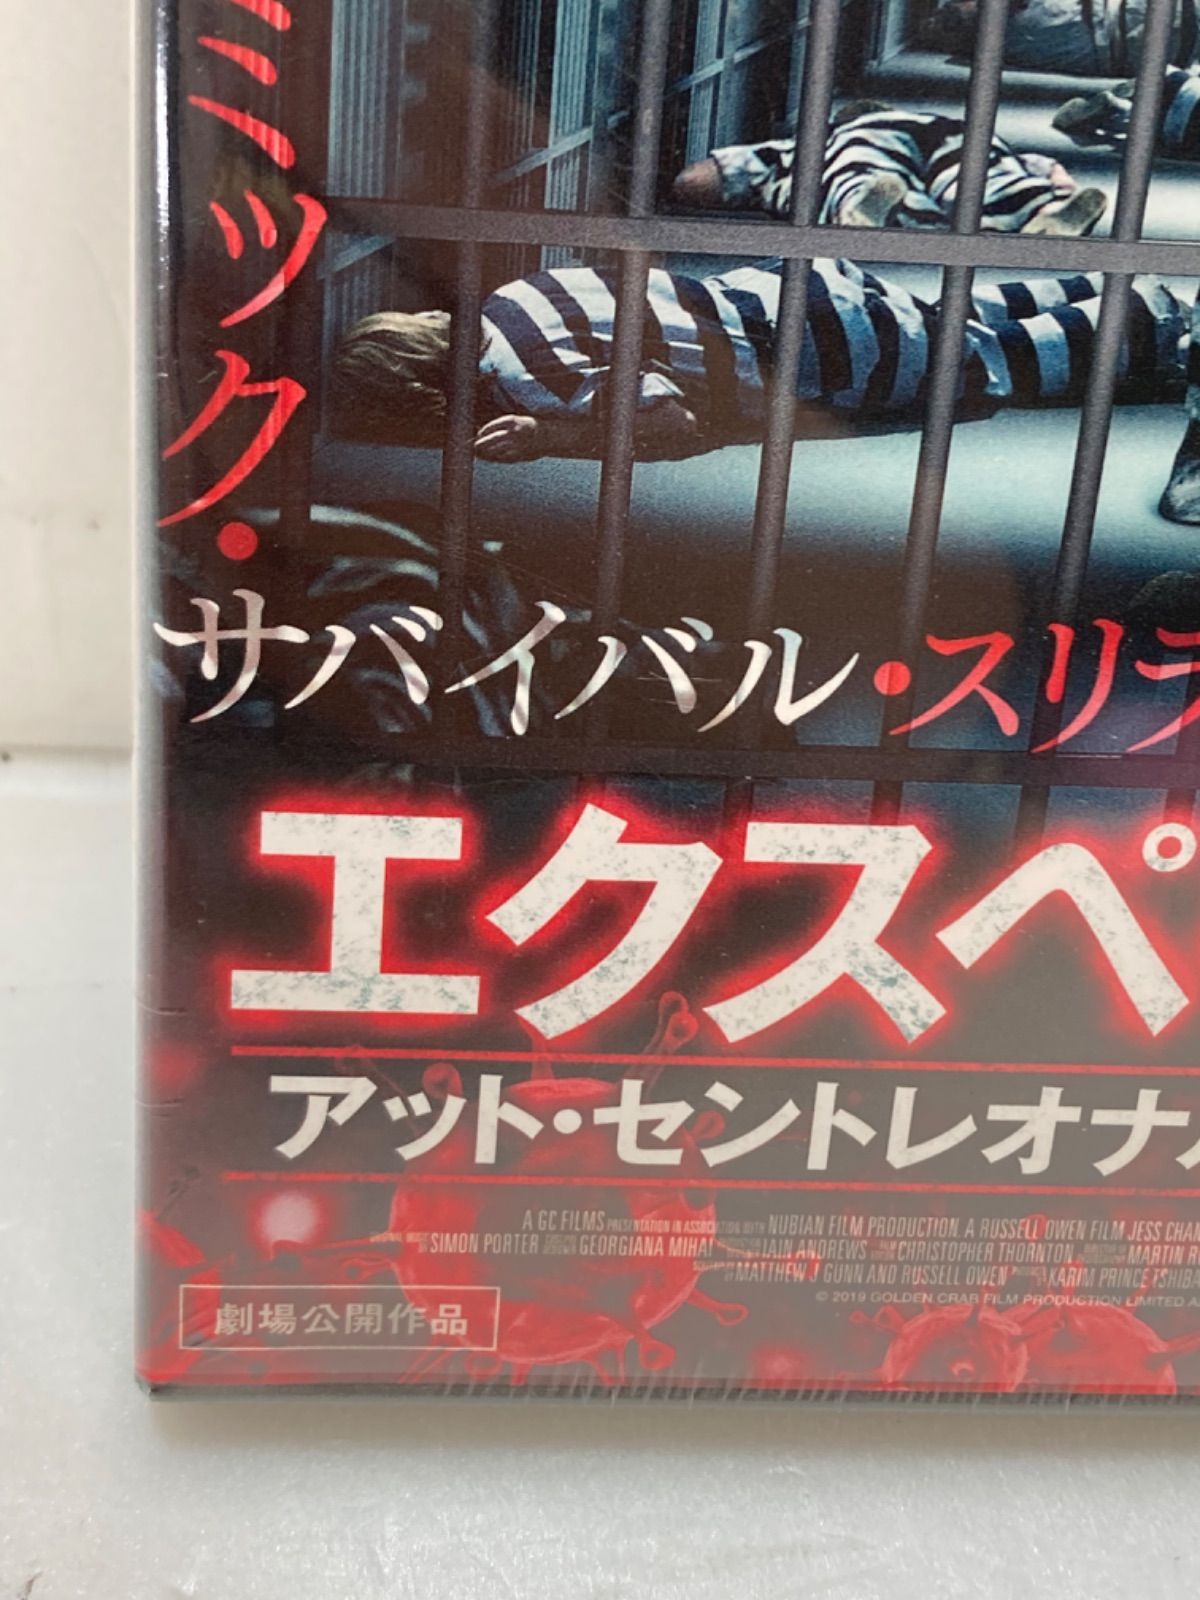 41】エクスペリメント・アット・セントレオナルズ女子刑務所 [DVD] - メルカリ